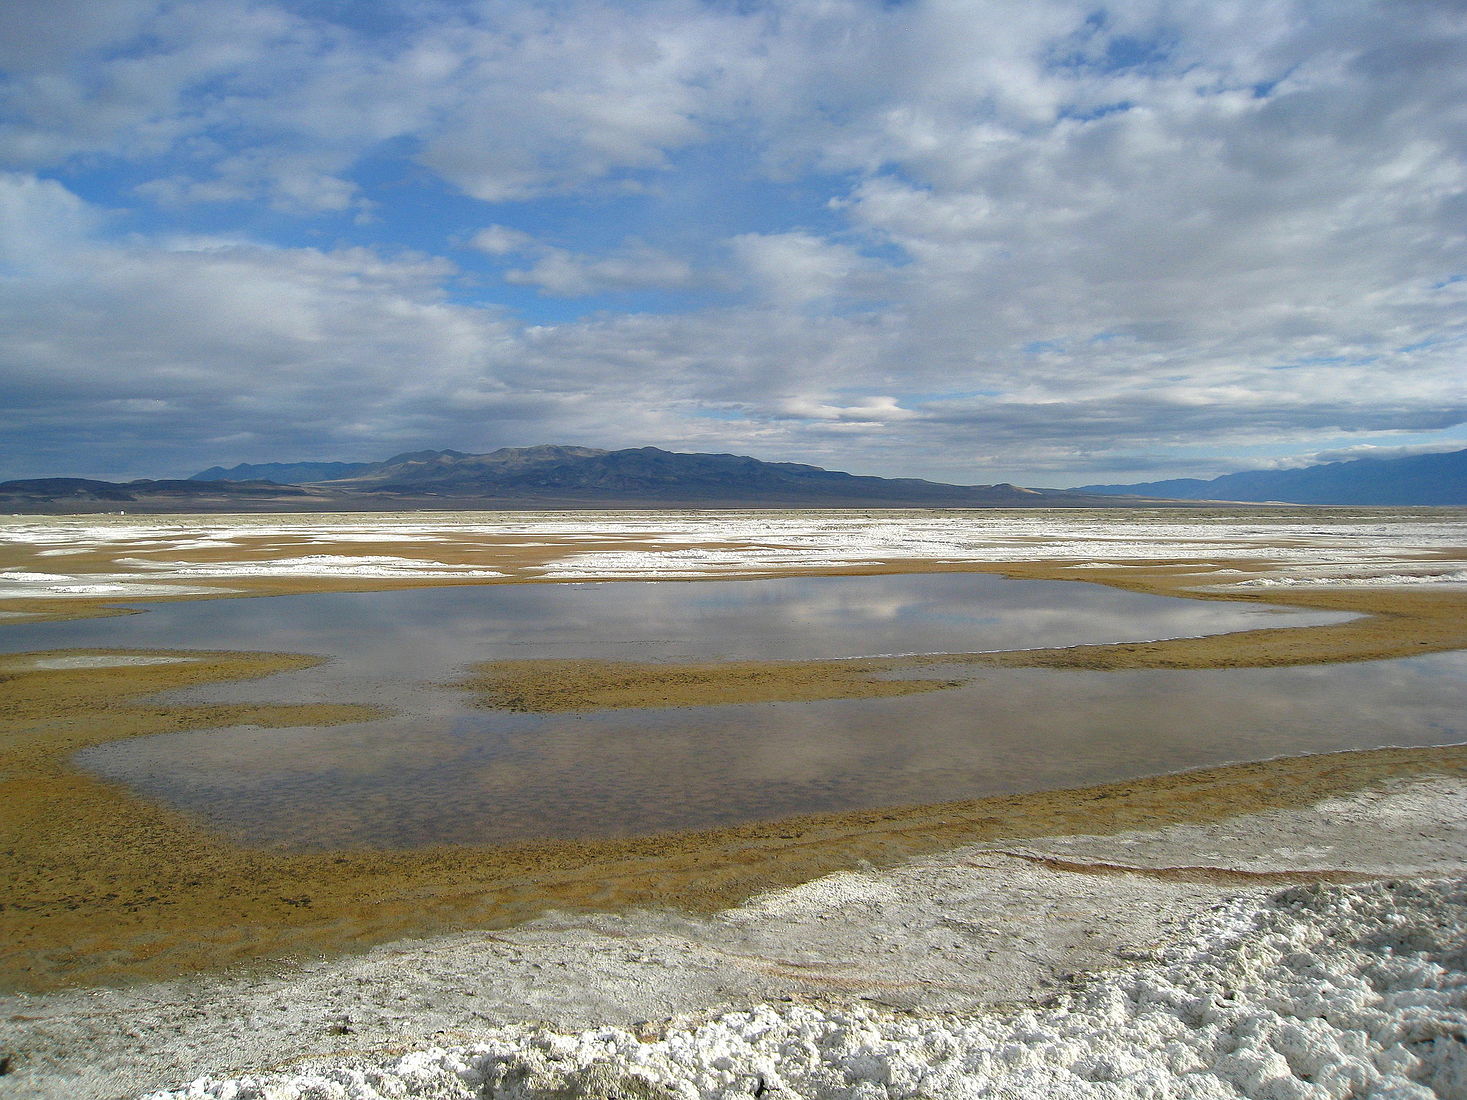 озеро соленое магадан